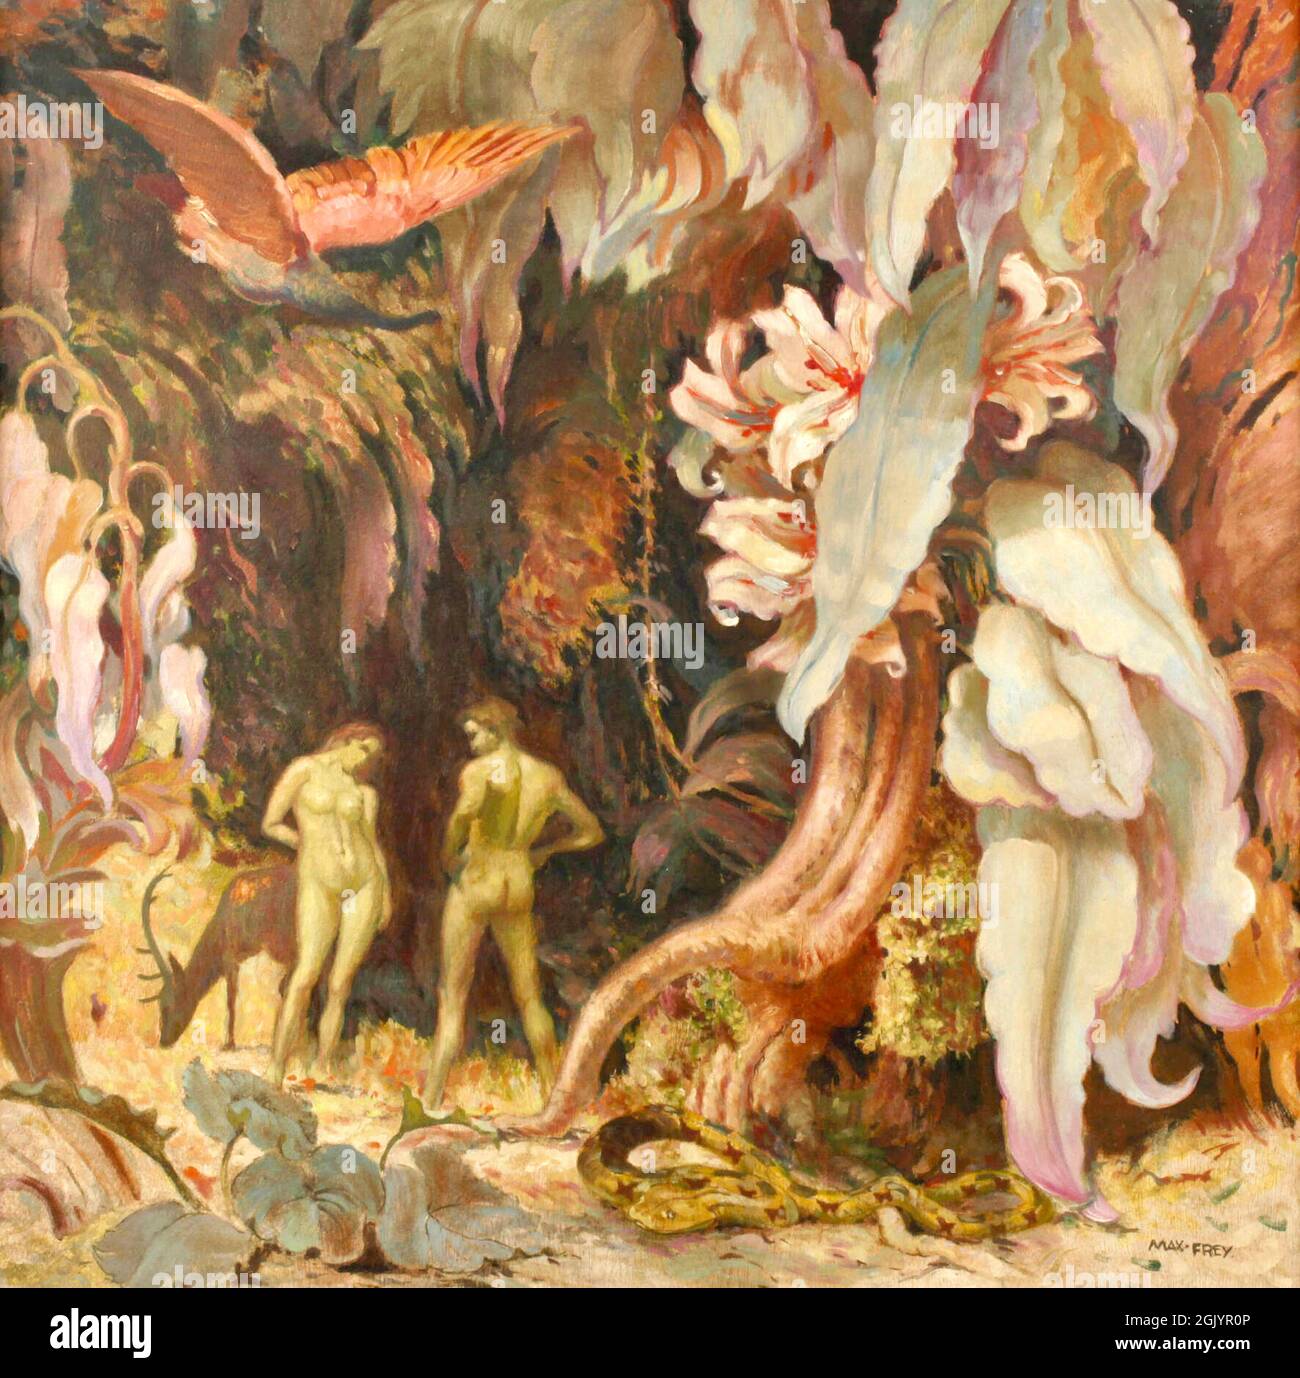 Max Frey art - Paradis - vers 1930 - Adam et Eve dans le jardin d'Eden entouré de grandes fleurs, feuilles et animaux. Banque D'Images